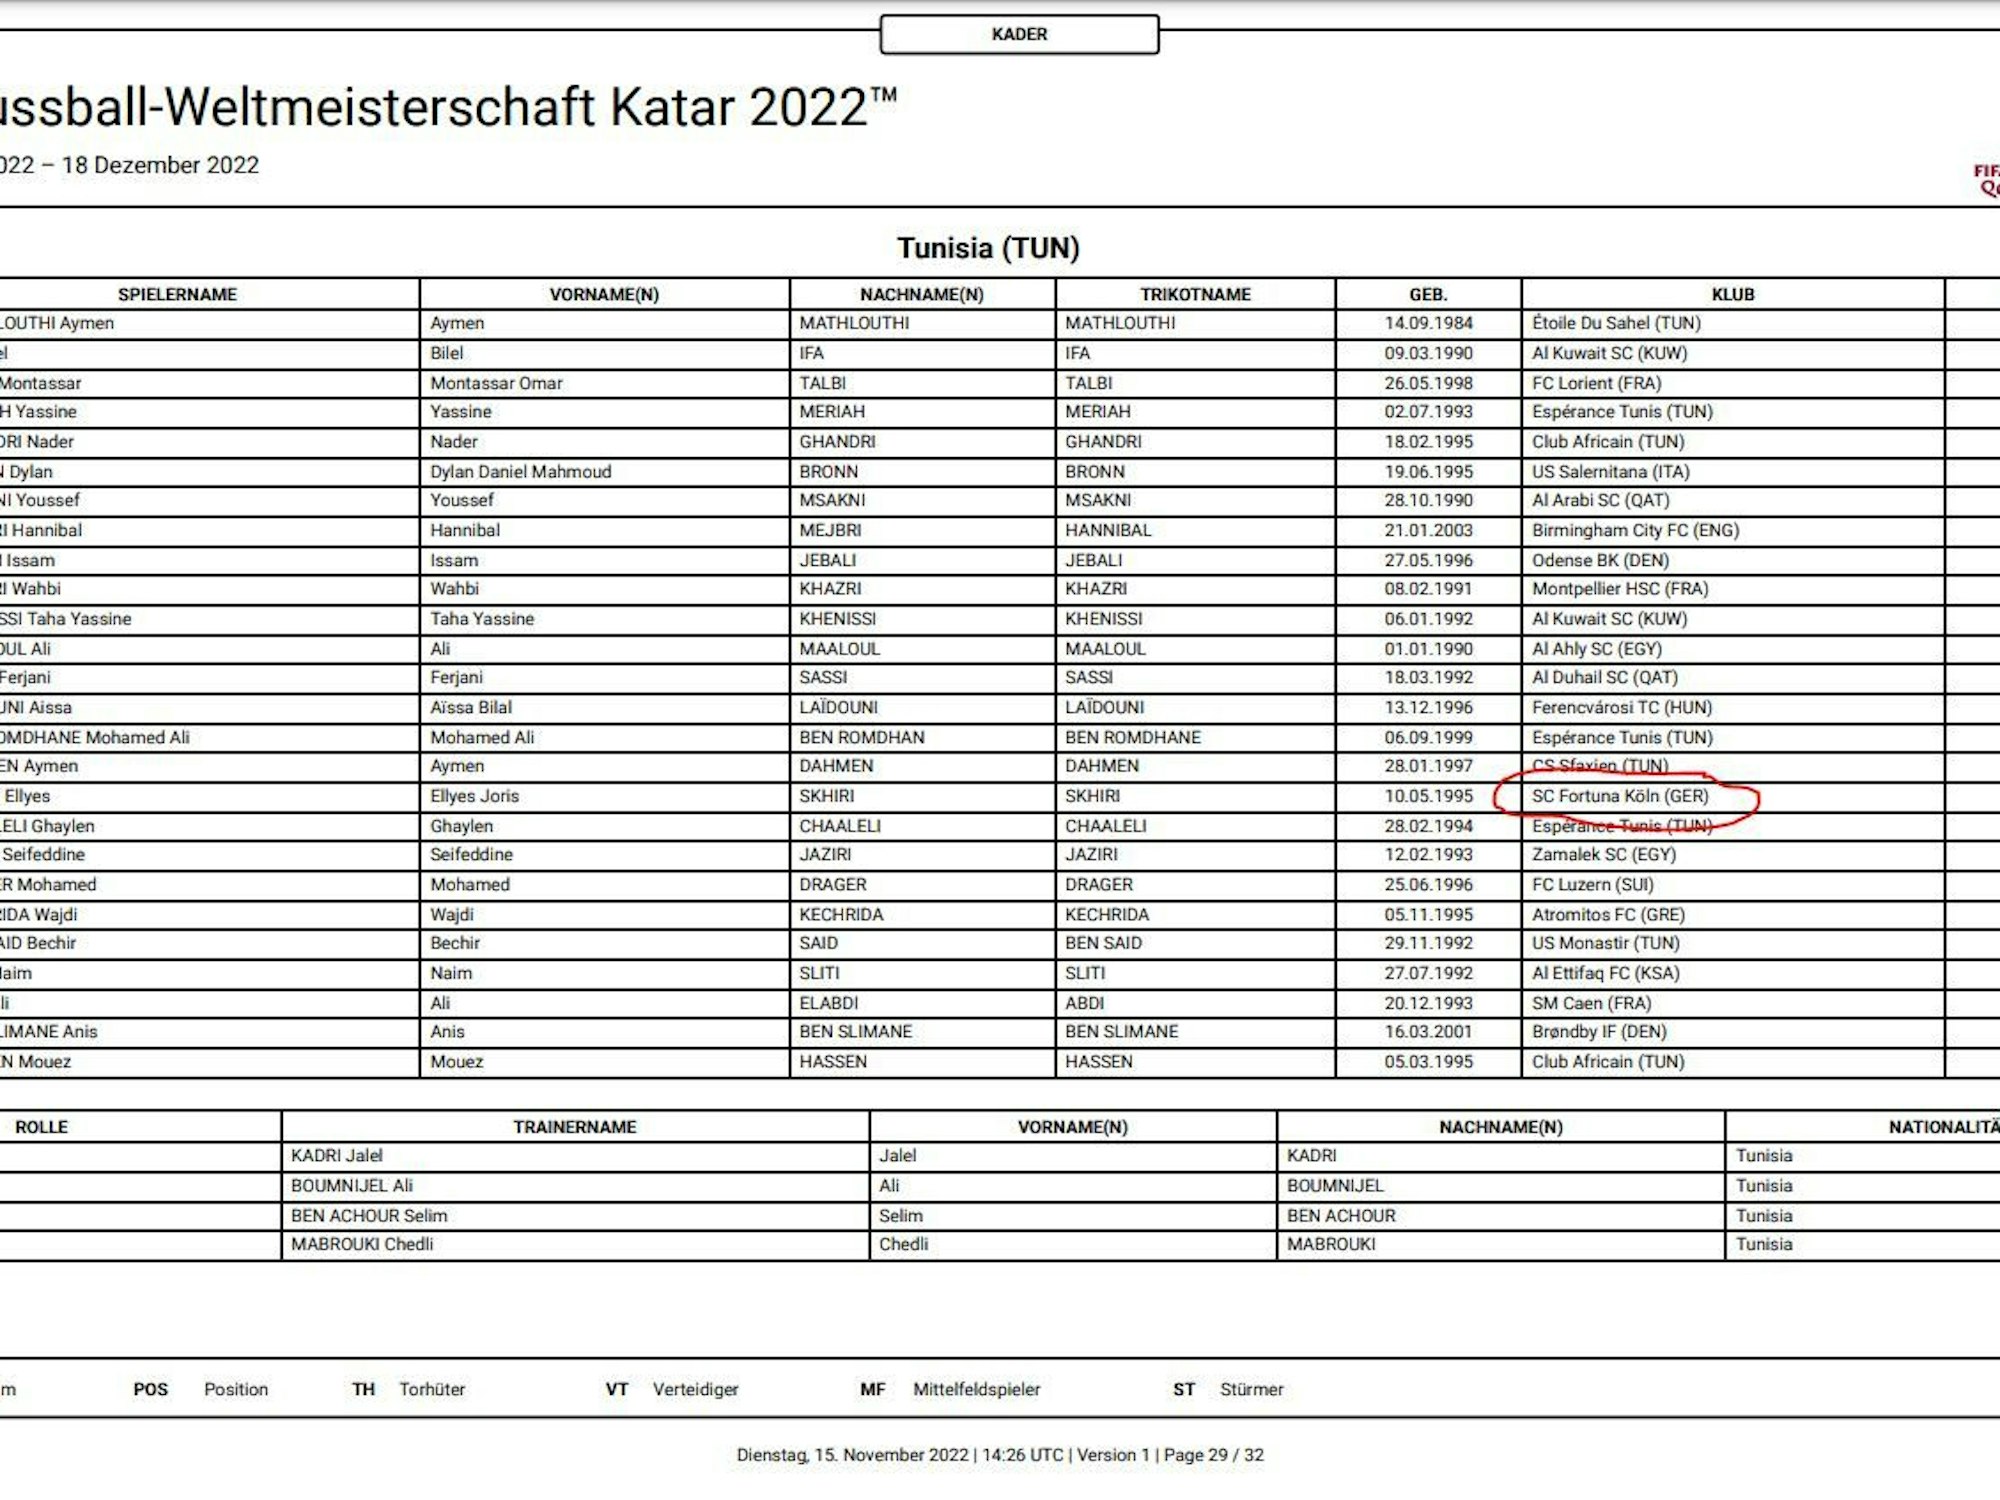 Das ist die Liste der tunesischen WM-Fahrer auf der FIFA-Seite.